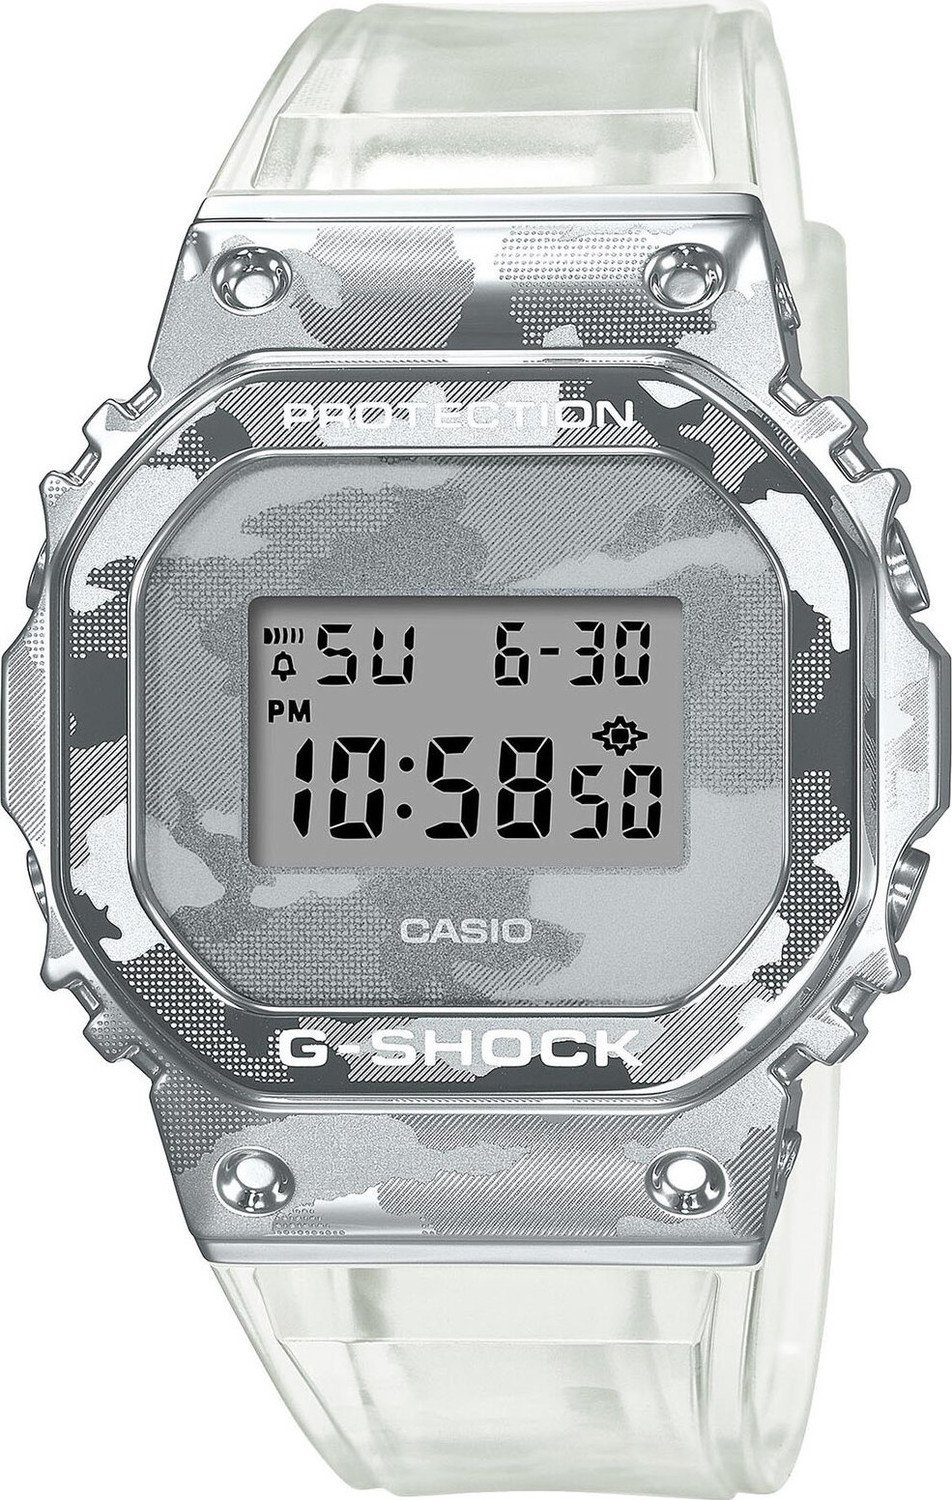 Hodinky G-Shock GM-5600SCM-1ER White/White